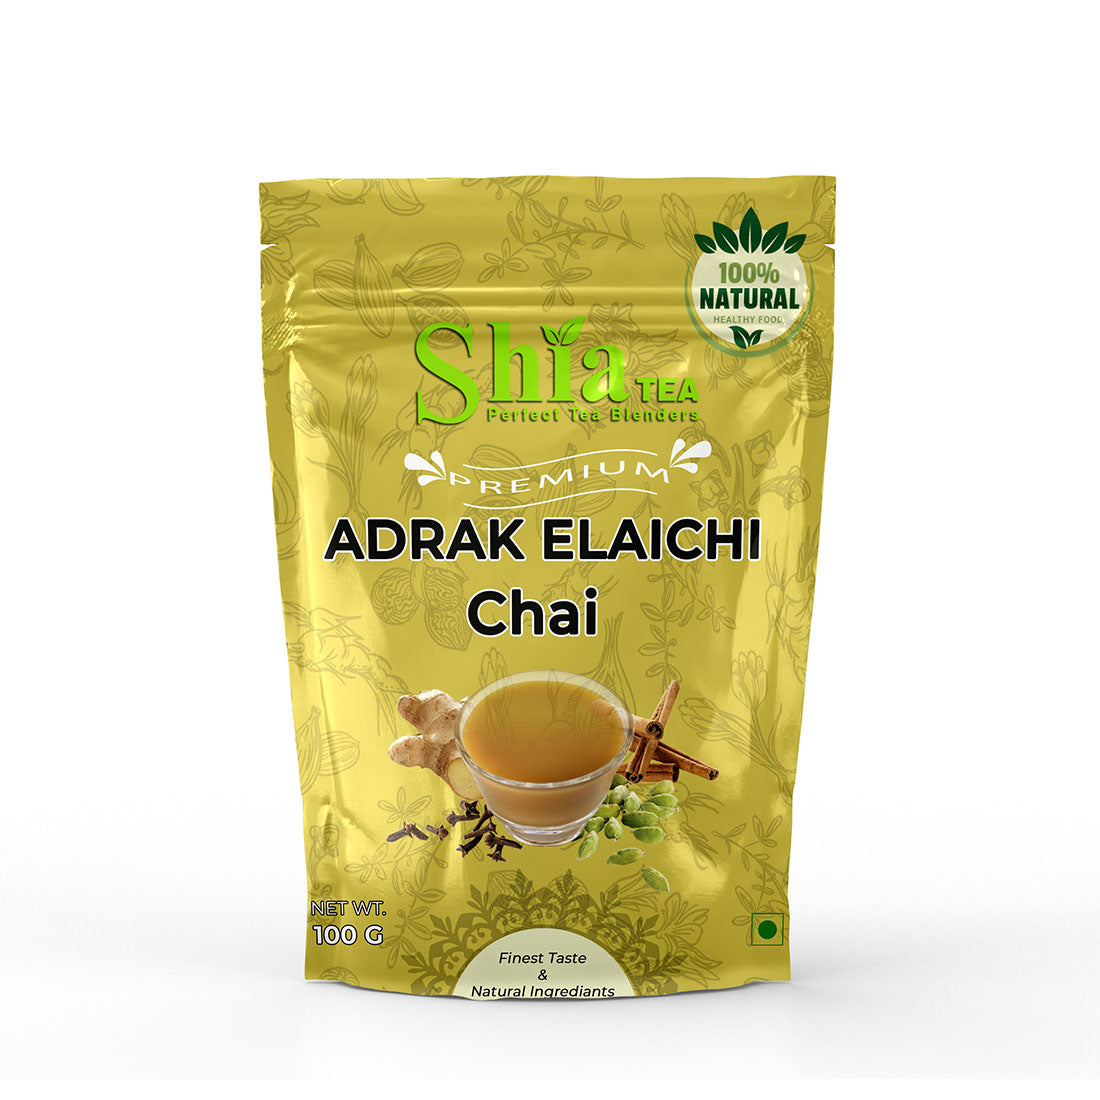 Adrak Elaichi chai